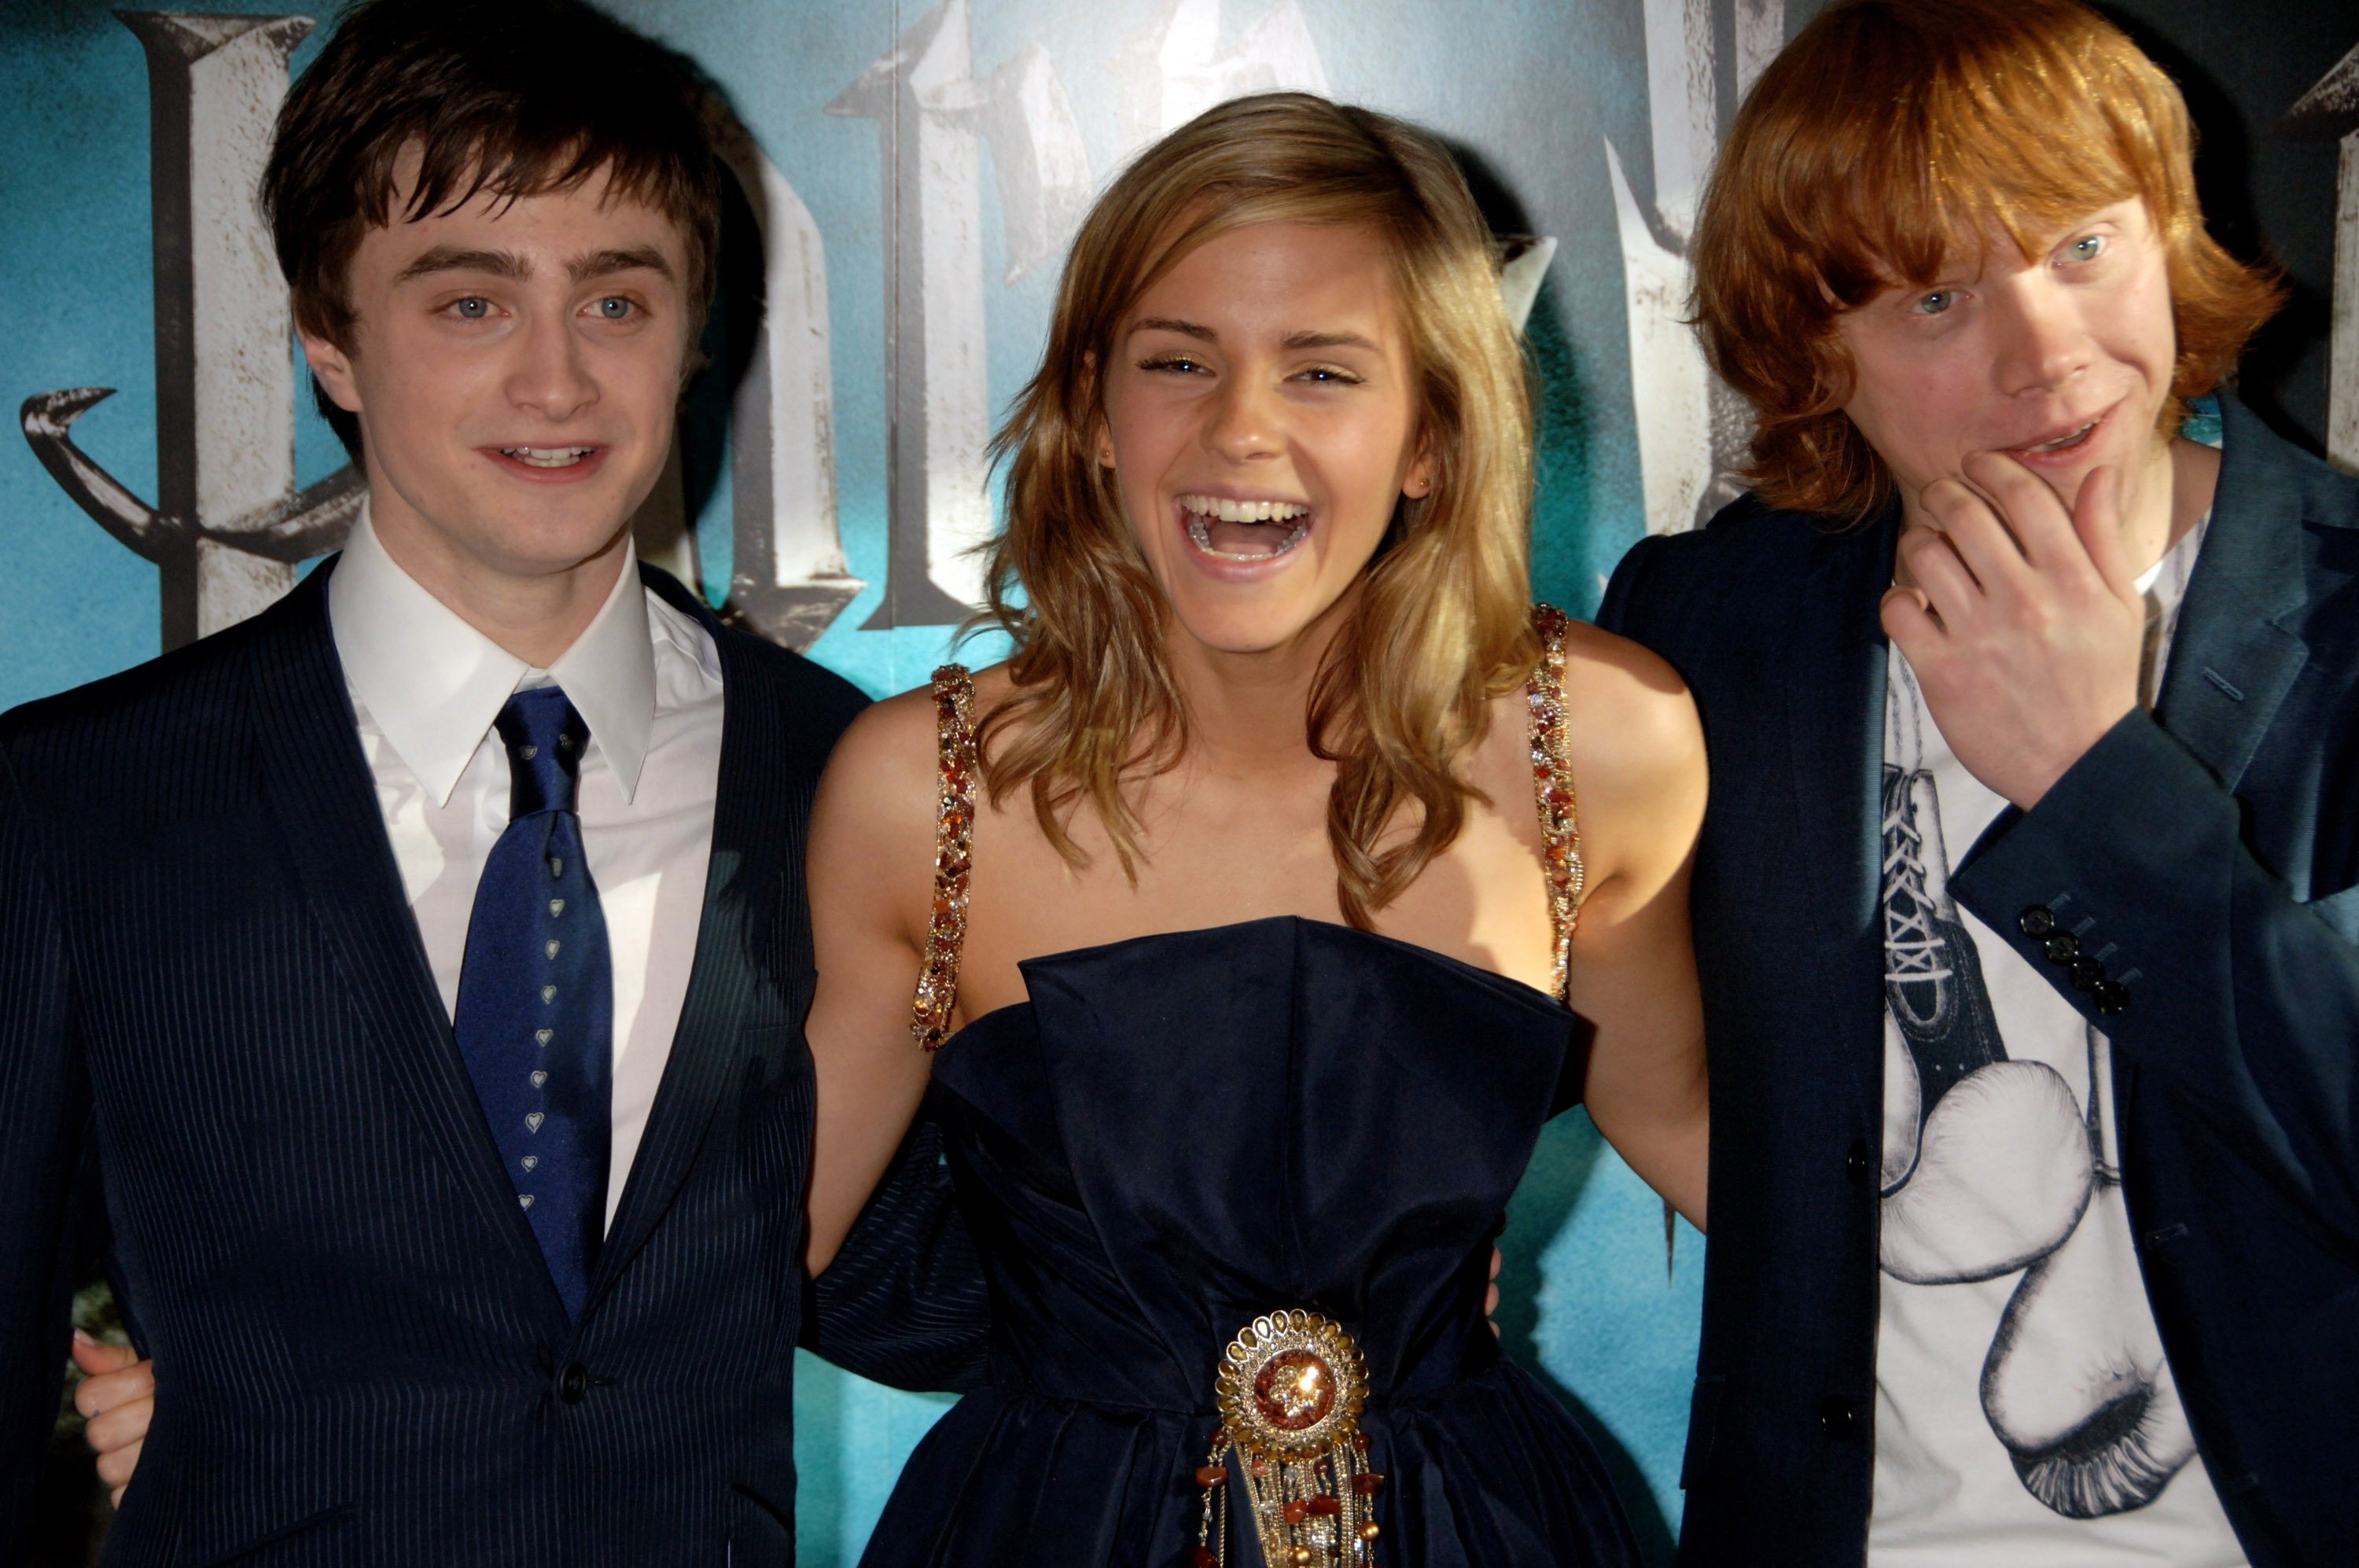 Daniel Radcliffe, Emma Watson, and Rupert Grint